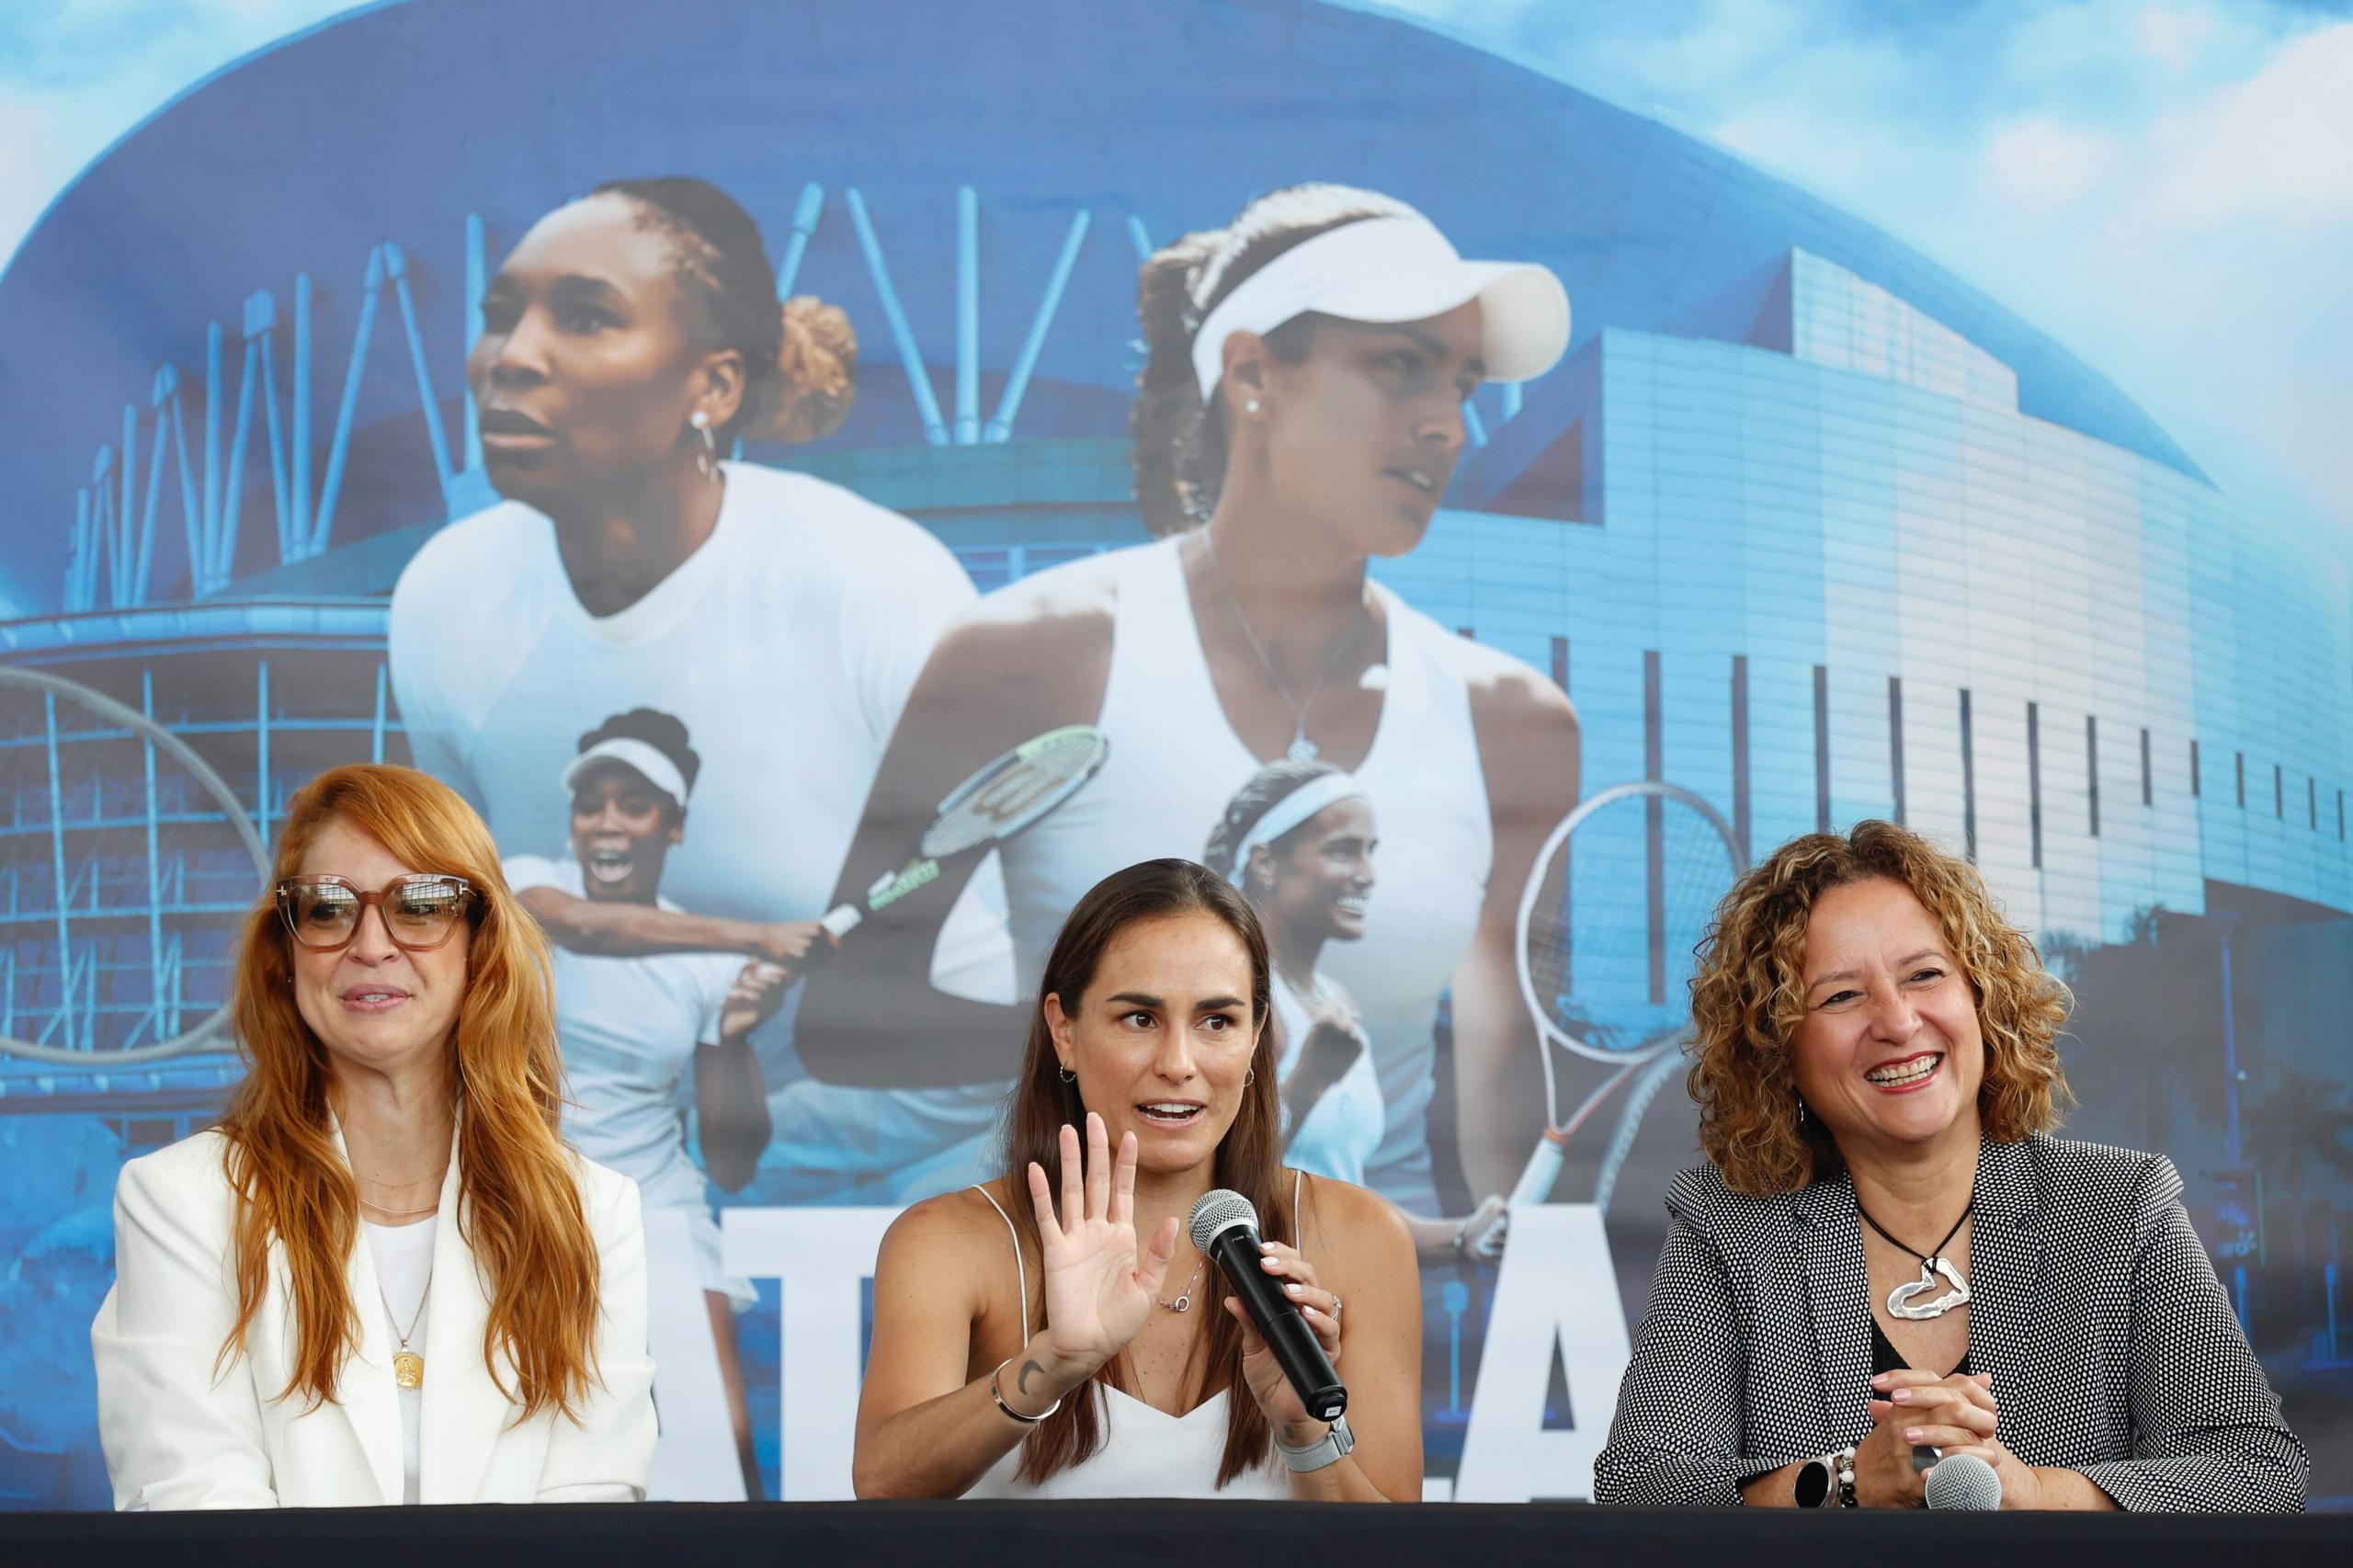 La tenista boricua,. Mónica Puig, ofreció la semana pasada detalles de lo que será su regreso al tenis para el partido de exhibición frente a Venus Williams.